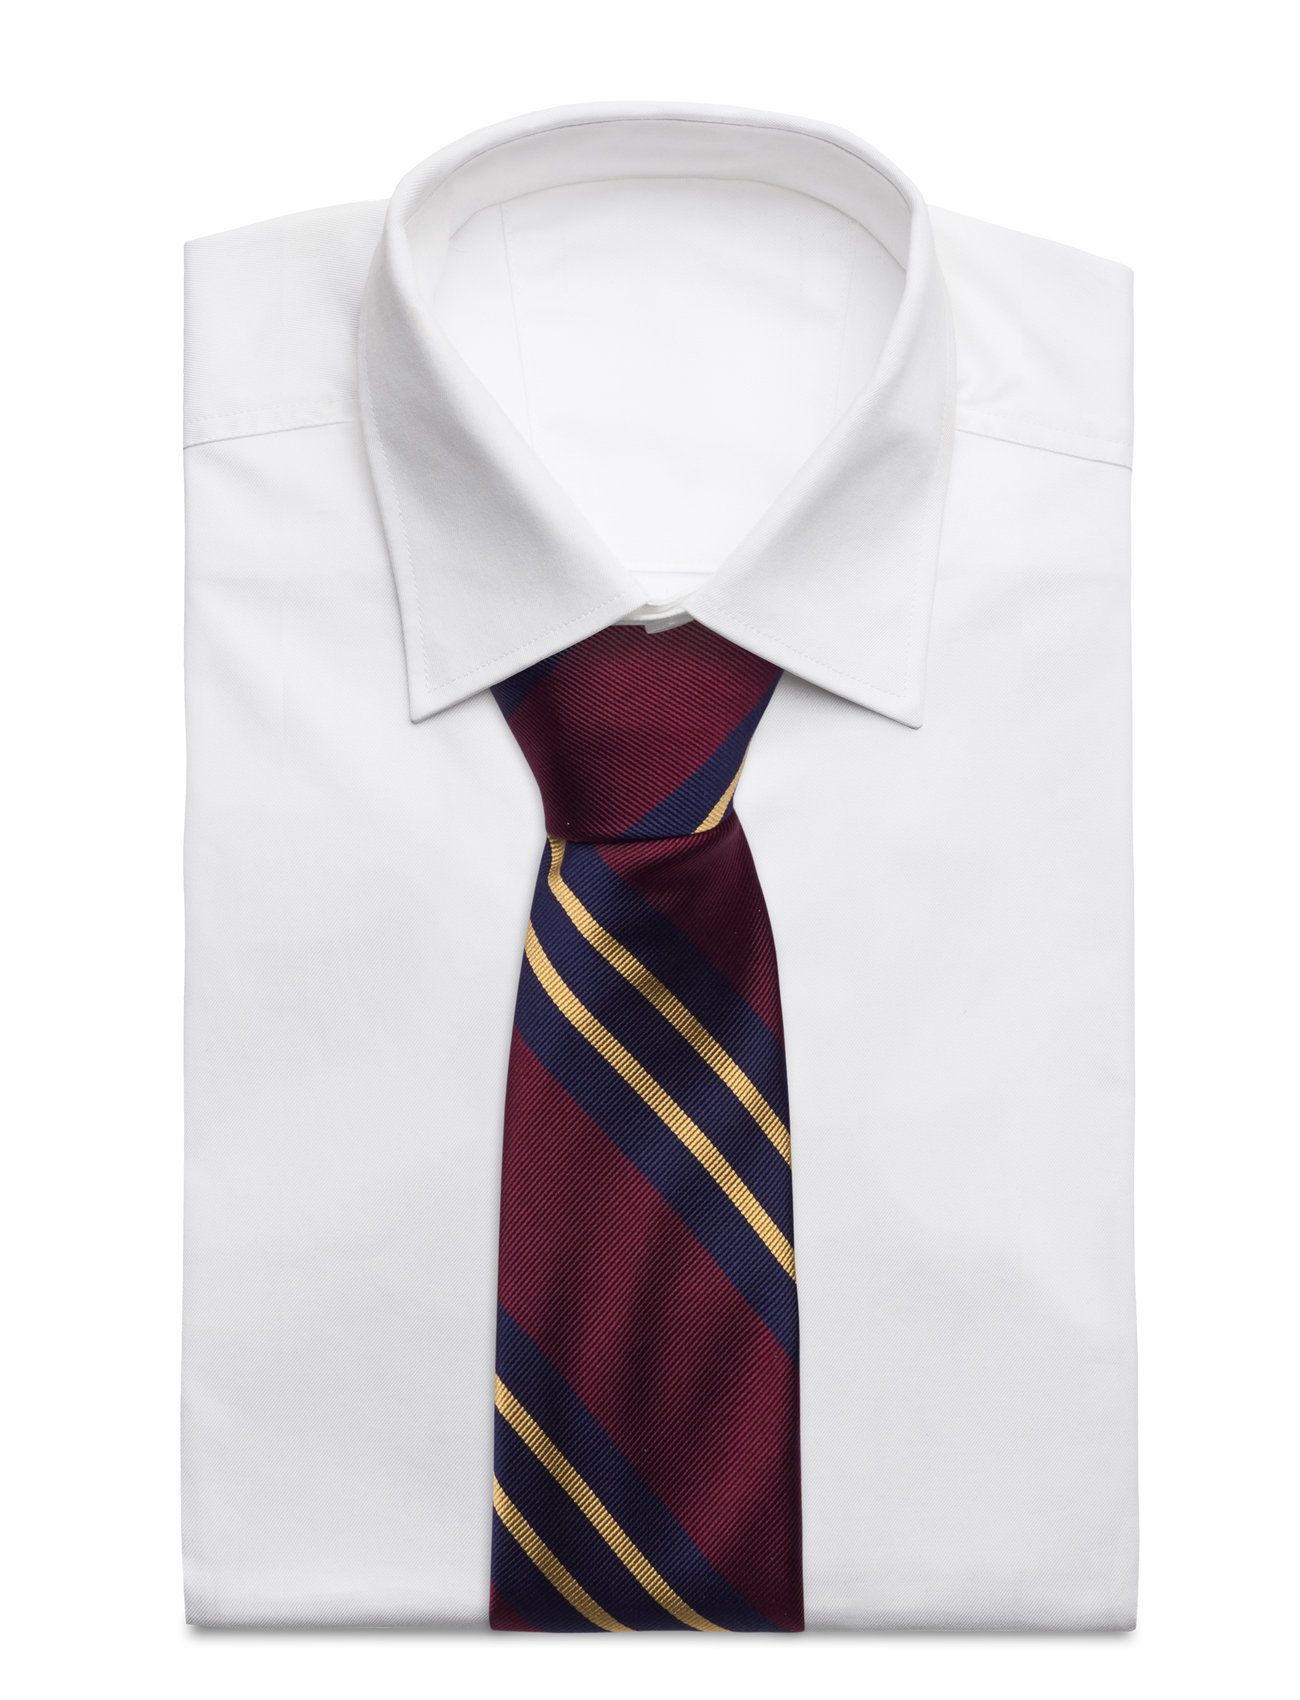 AN IVY - Miles Burgundy Striped Silk Tie - ties - burgundy - 1